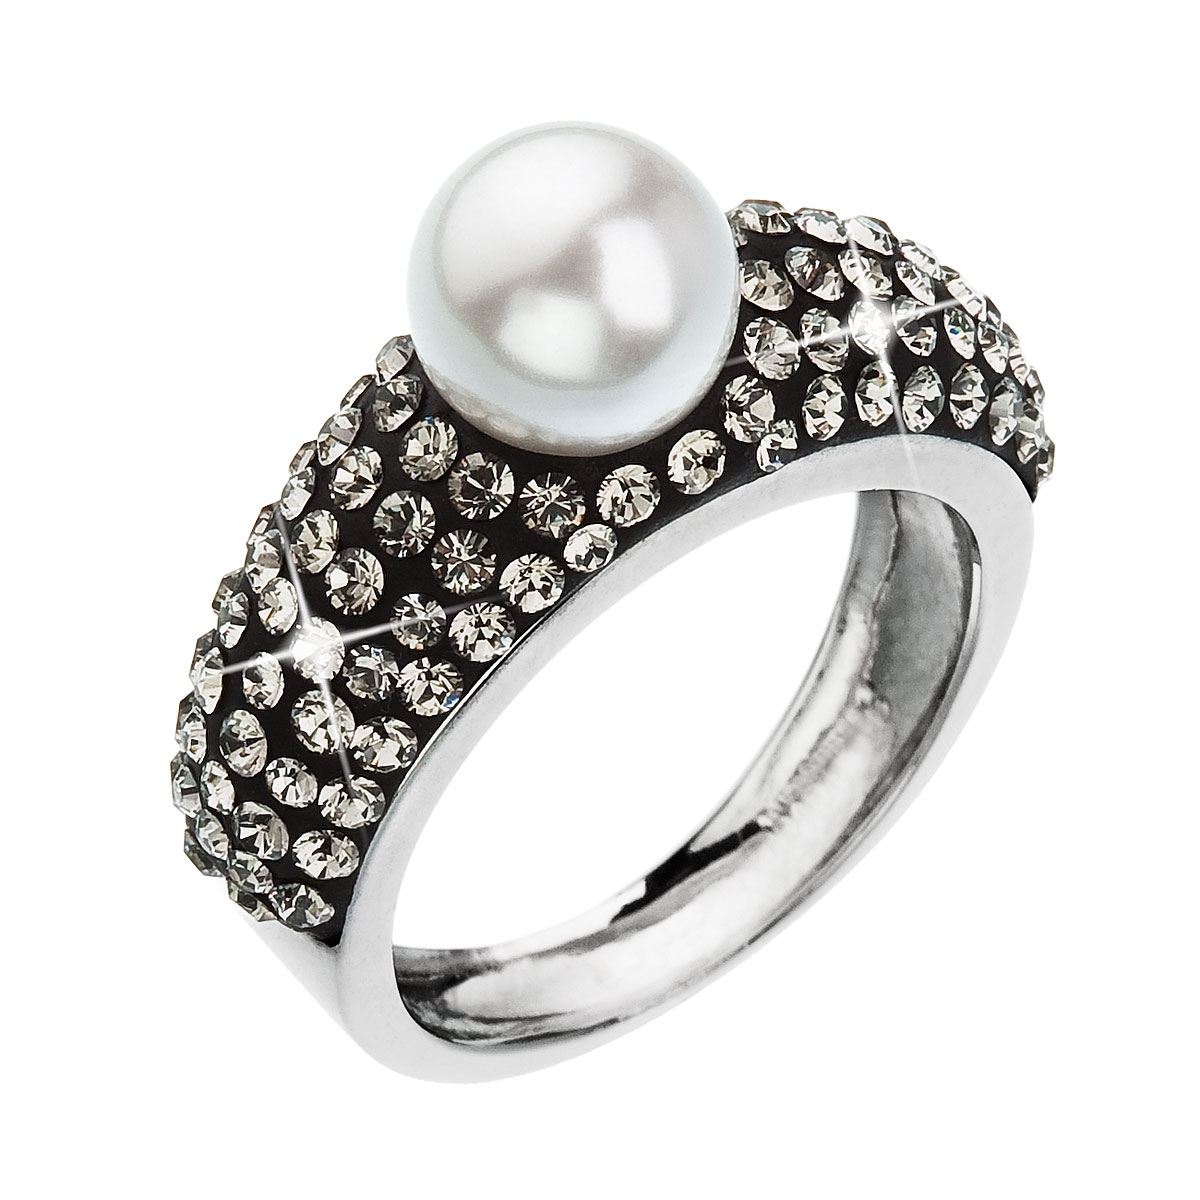 Strieborný prsteň s kryštálmi Swarovski biela sivá